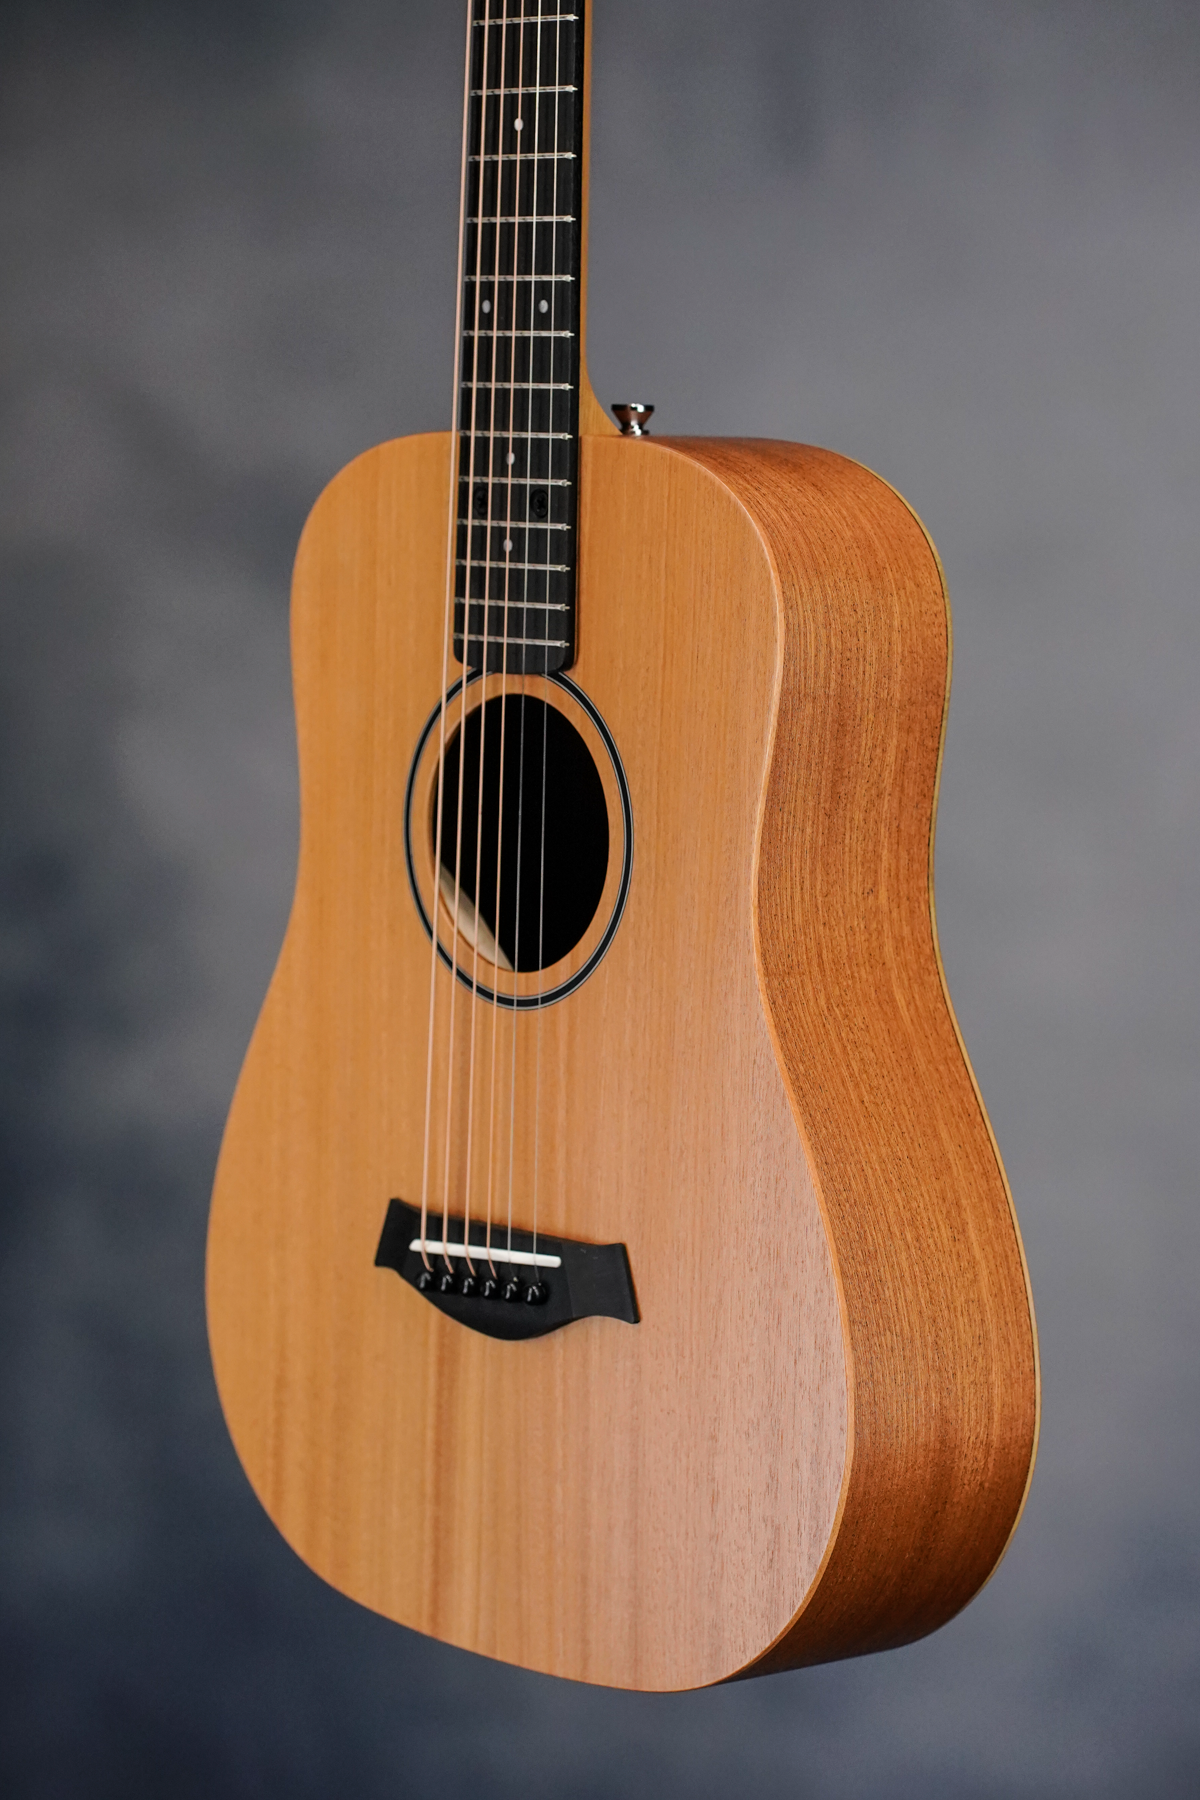 Baby Taylor Mahogany Top Mini-Dreadnought Acoustic Guitar, Natural